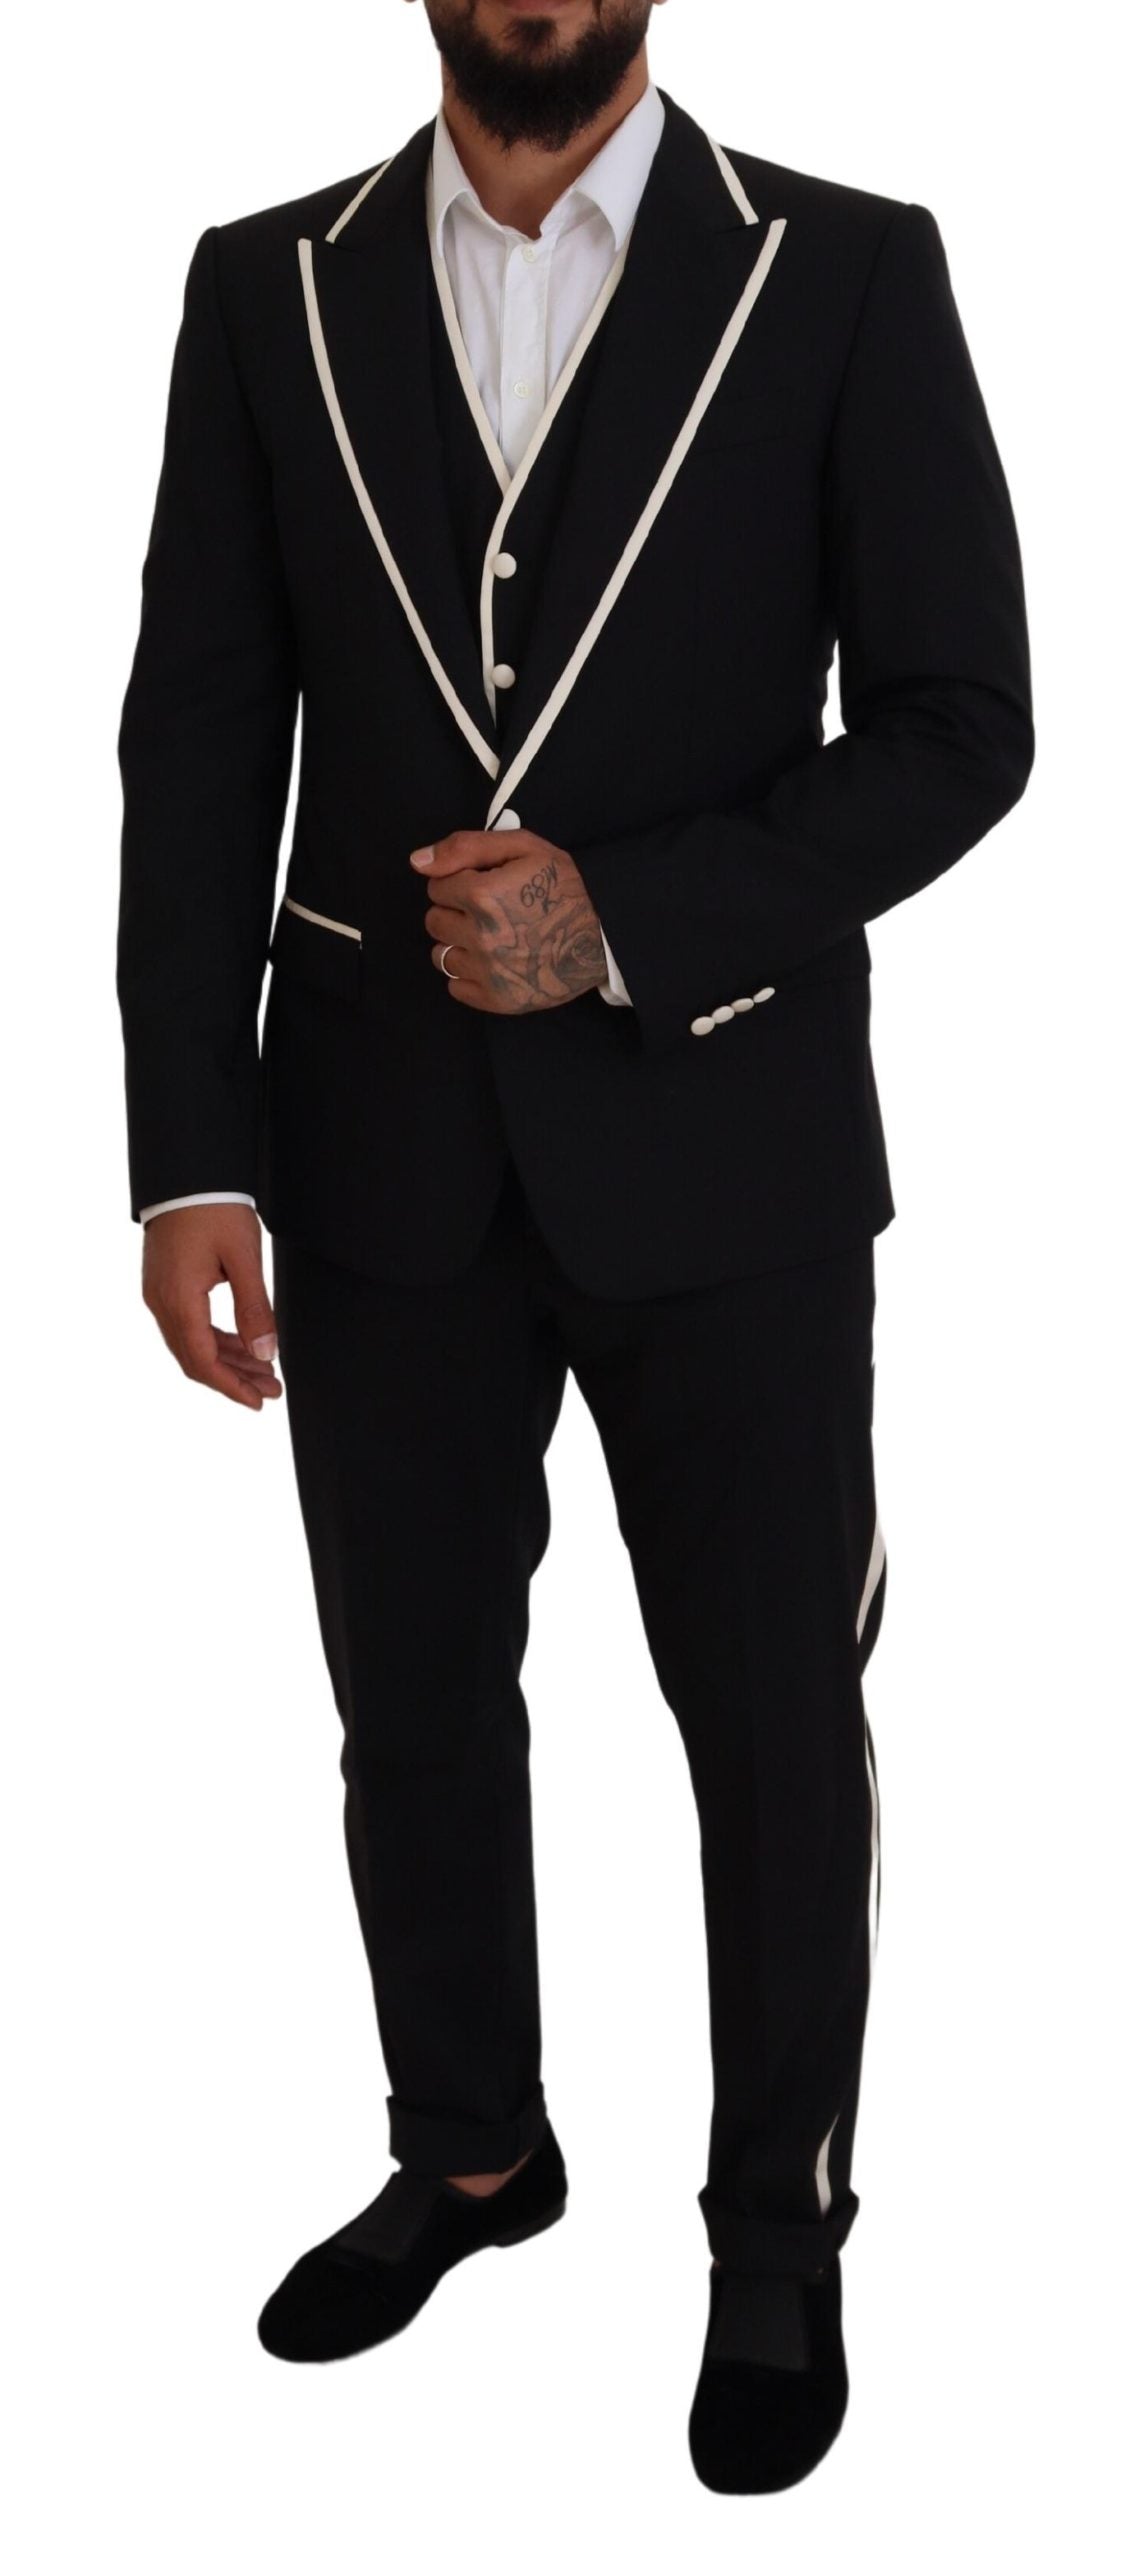 Elegant Black and White Slim Fit Three Piece Suit